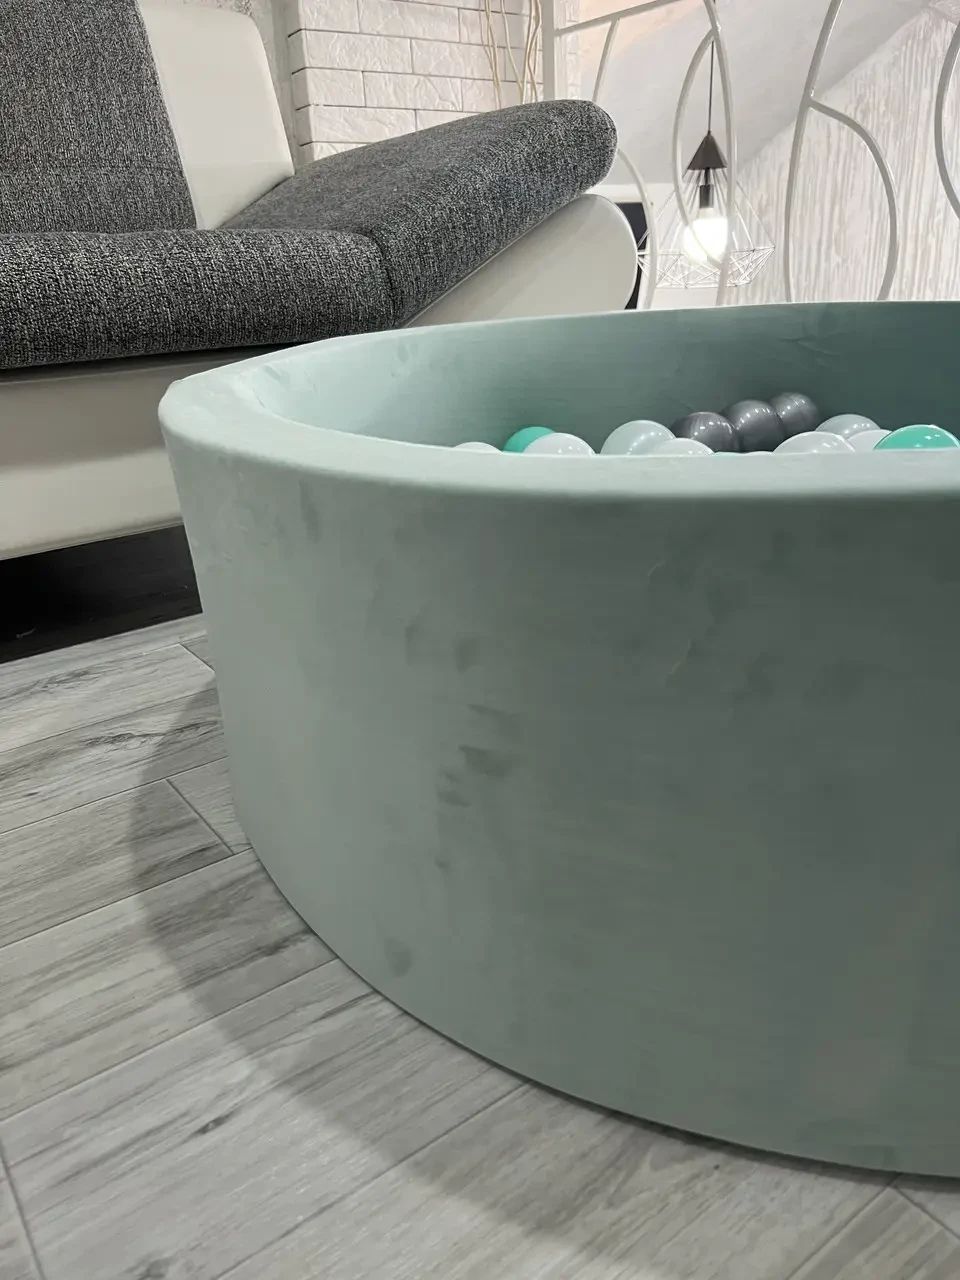 Сухий басейн з кульками в комплекті (200 шт) фісташкового кольору 100 х 40 см велюр